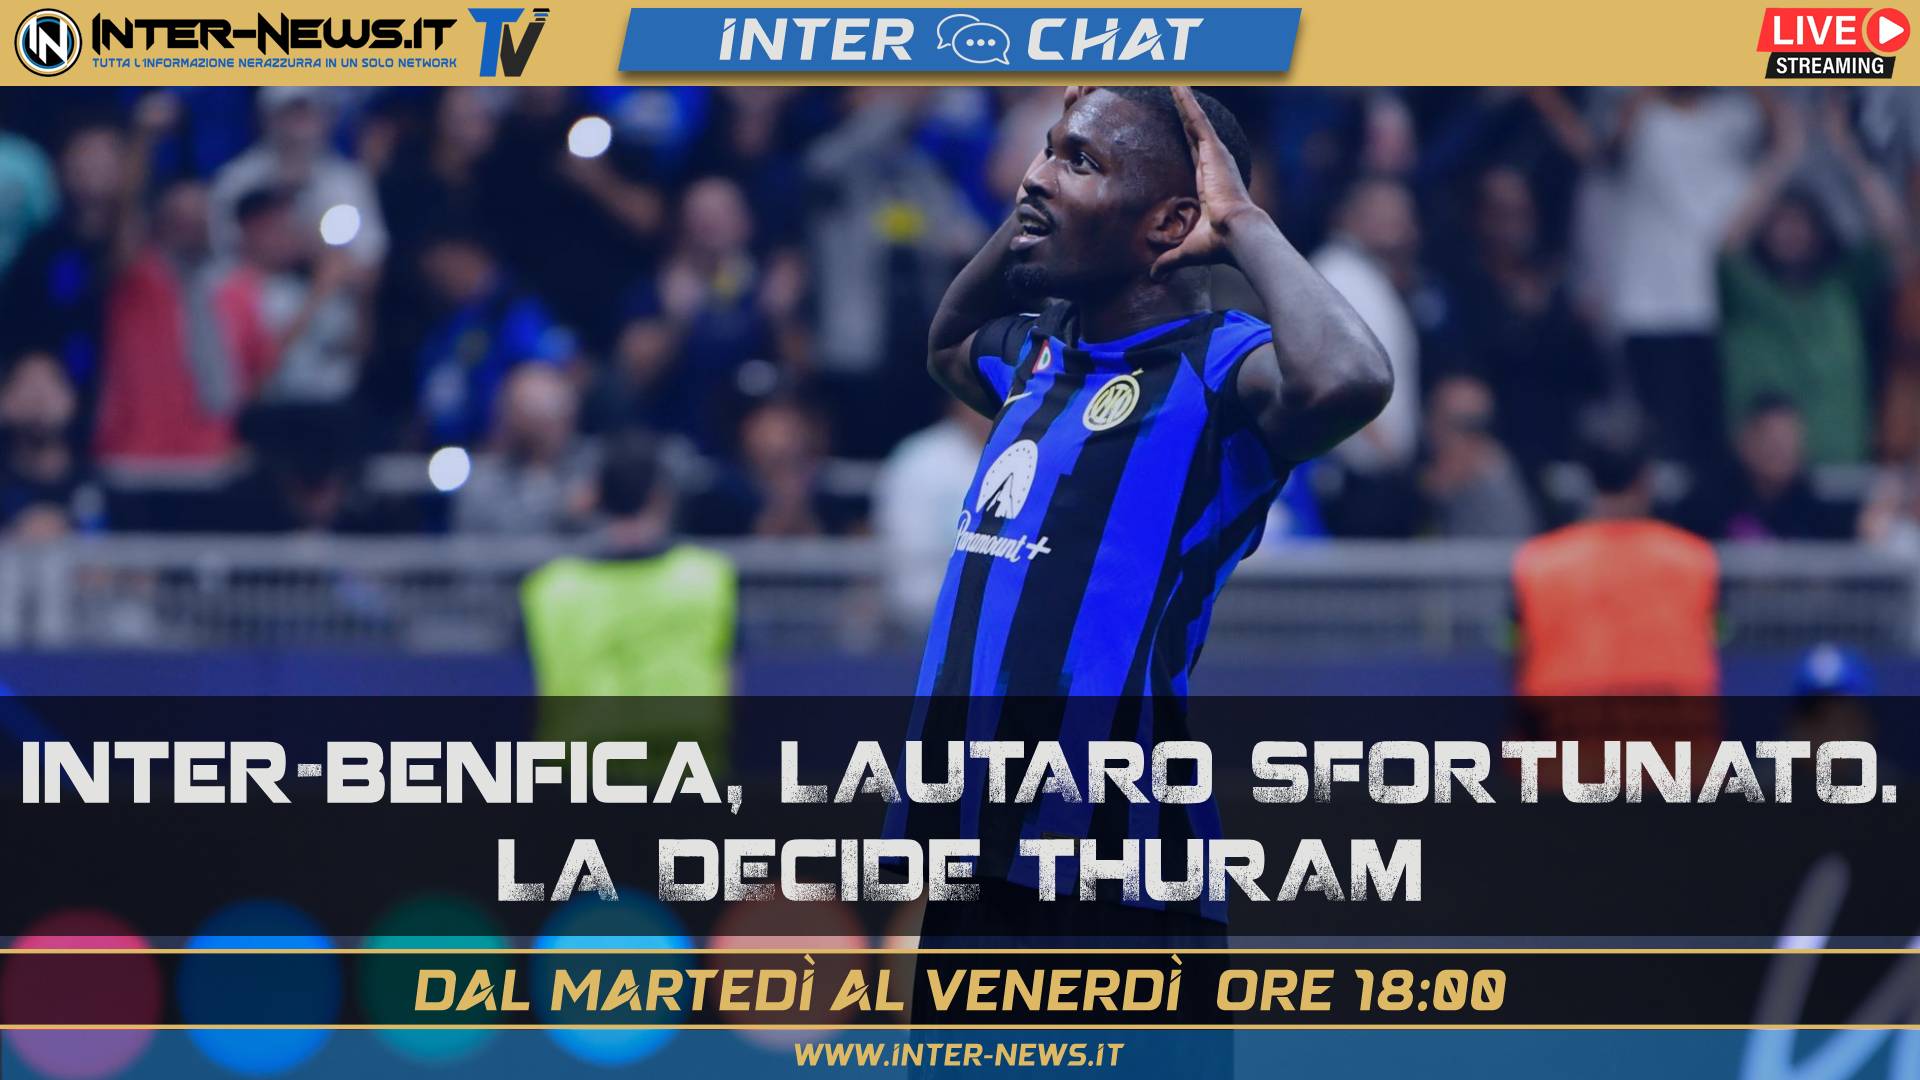 Inter Benfica, Lautaro Martinez sfortunato. Decide Thuram – Inter Chat LIVE